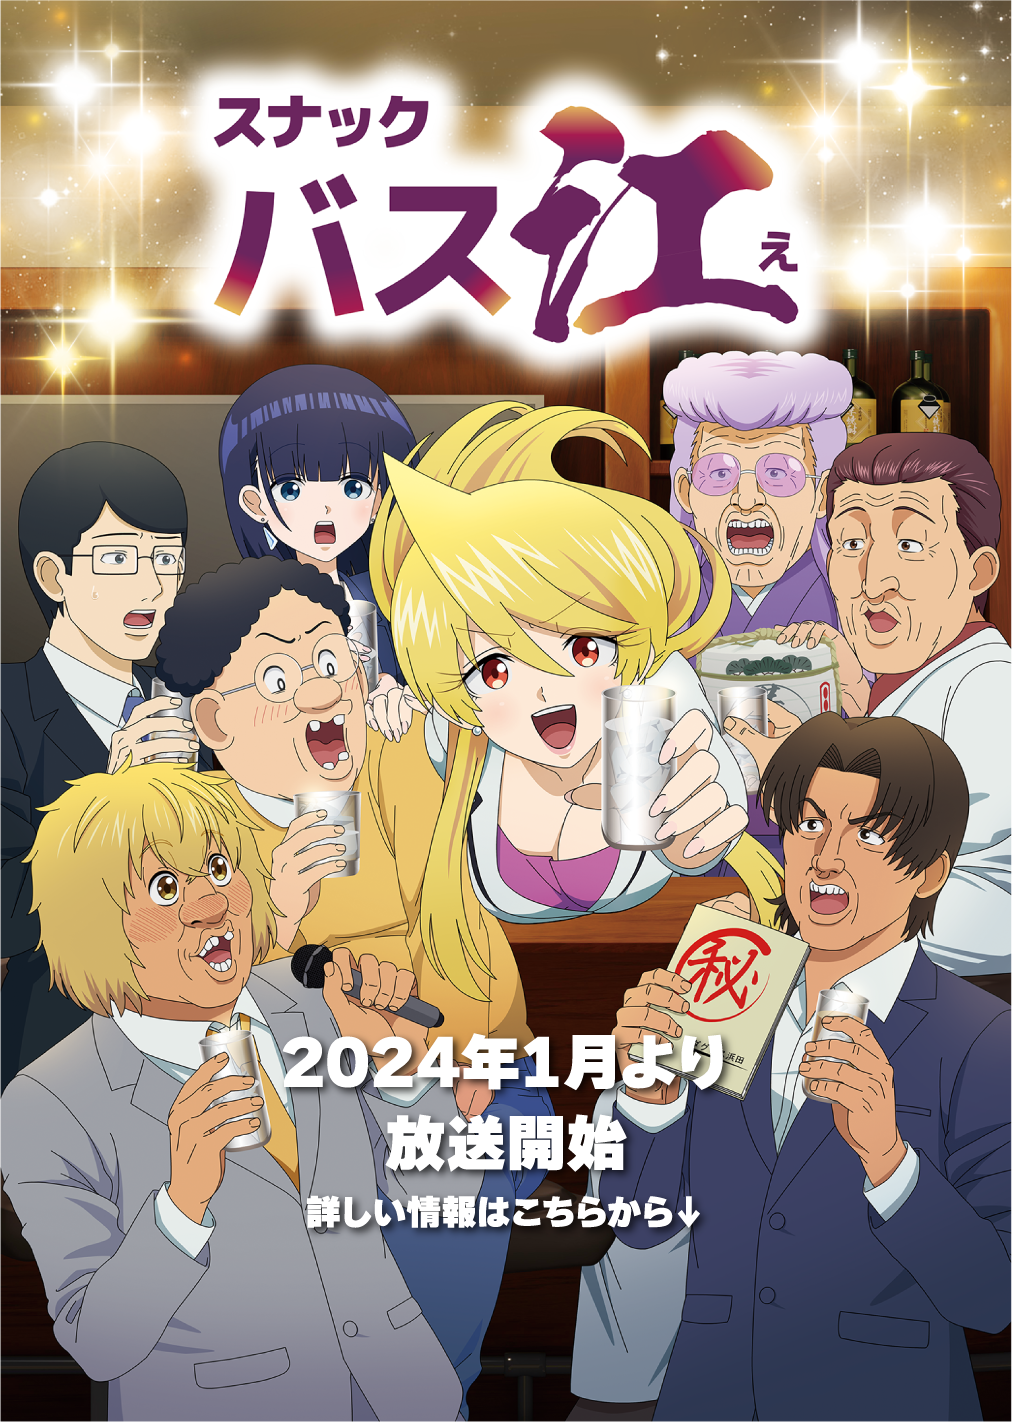 TVアニメ「スナック バス江」は2024年1月より放送開始